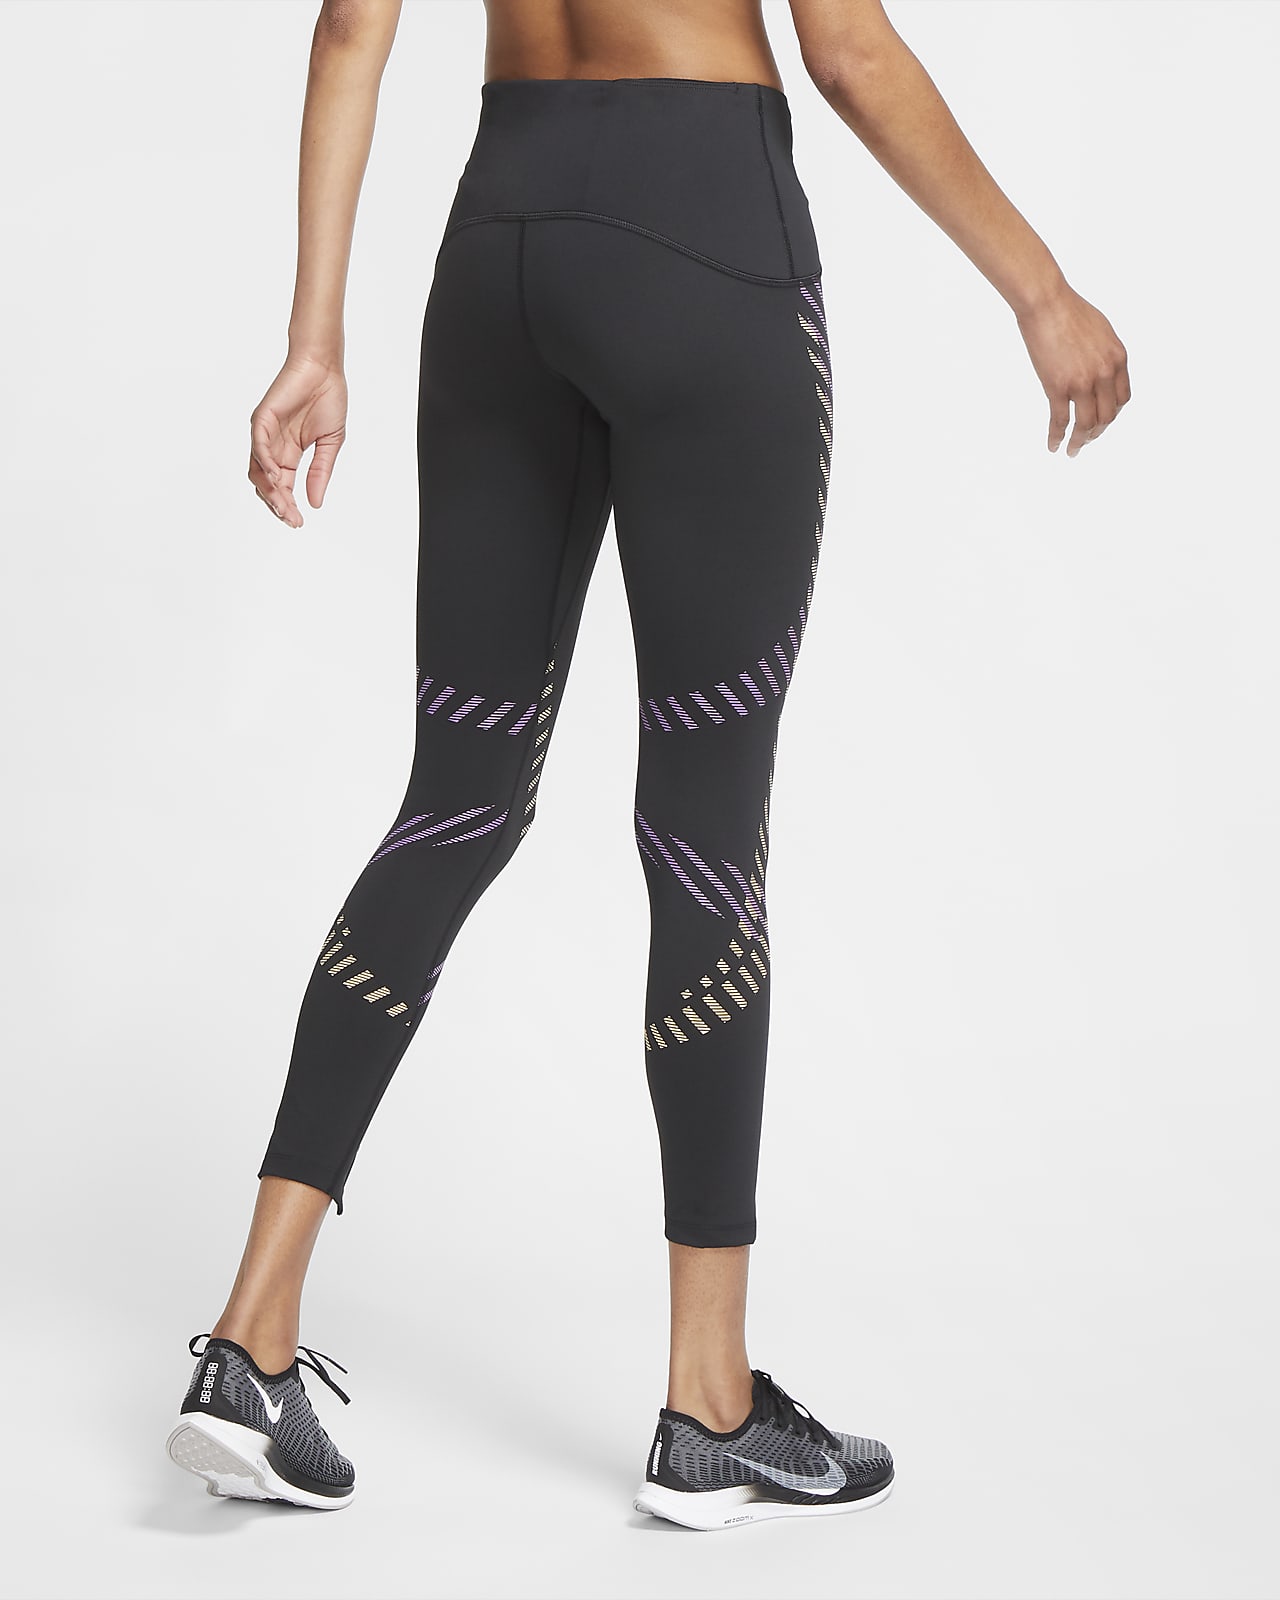 best 7/8 running leggings for women over 50